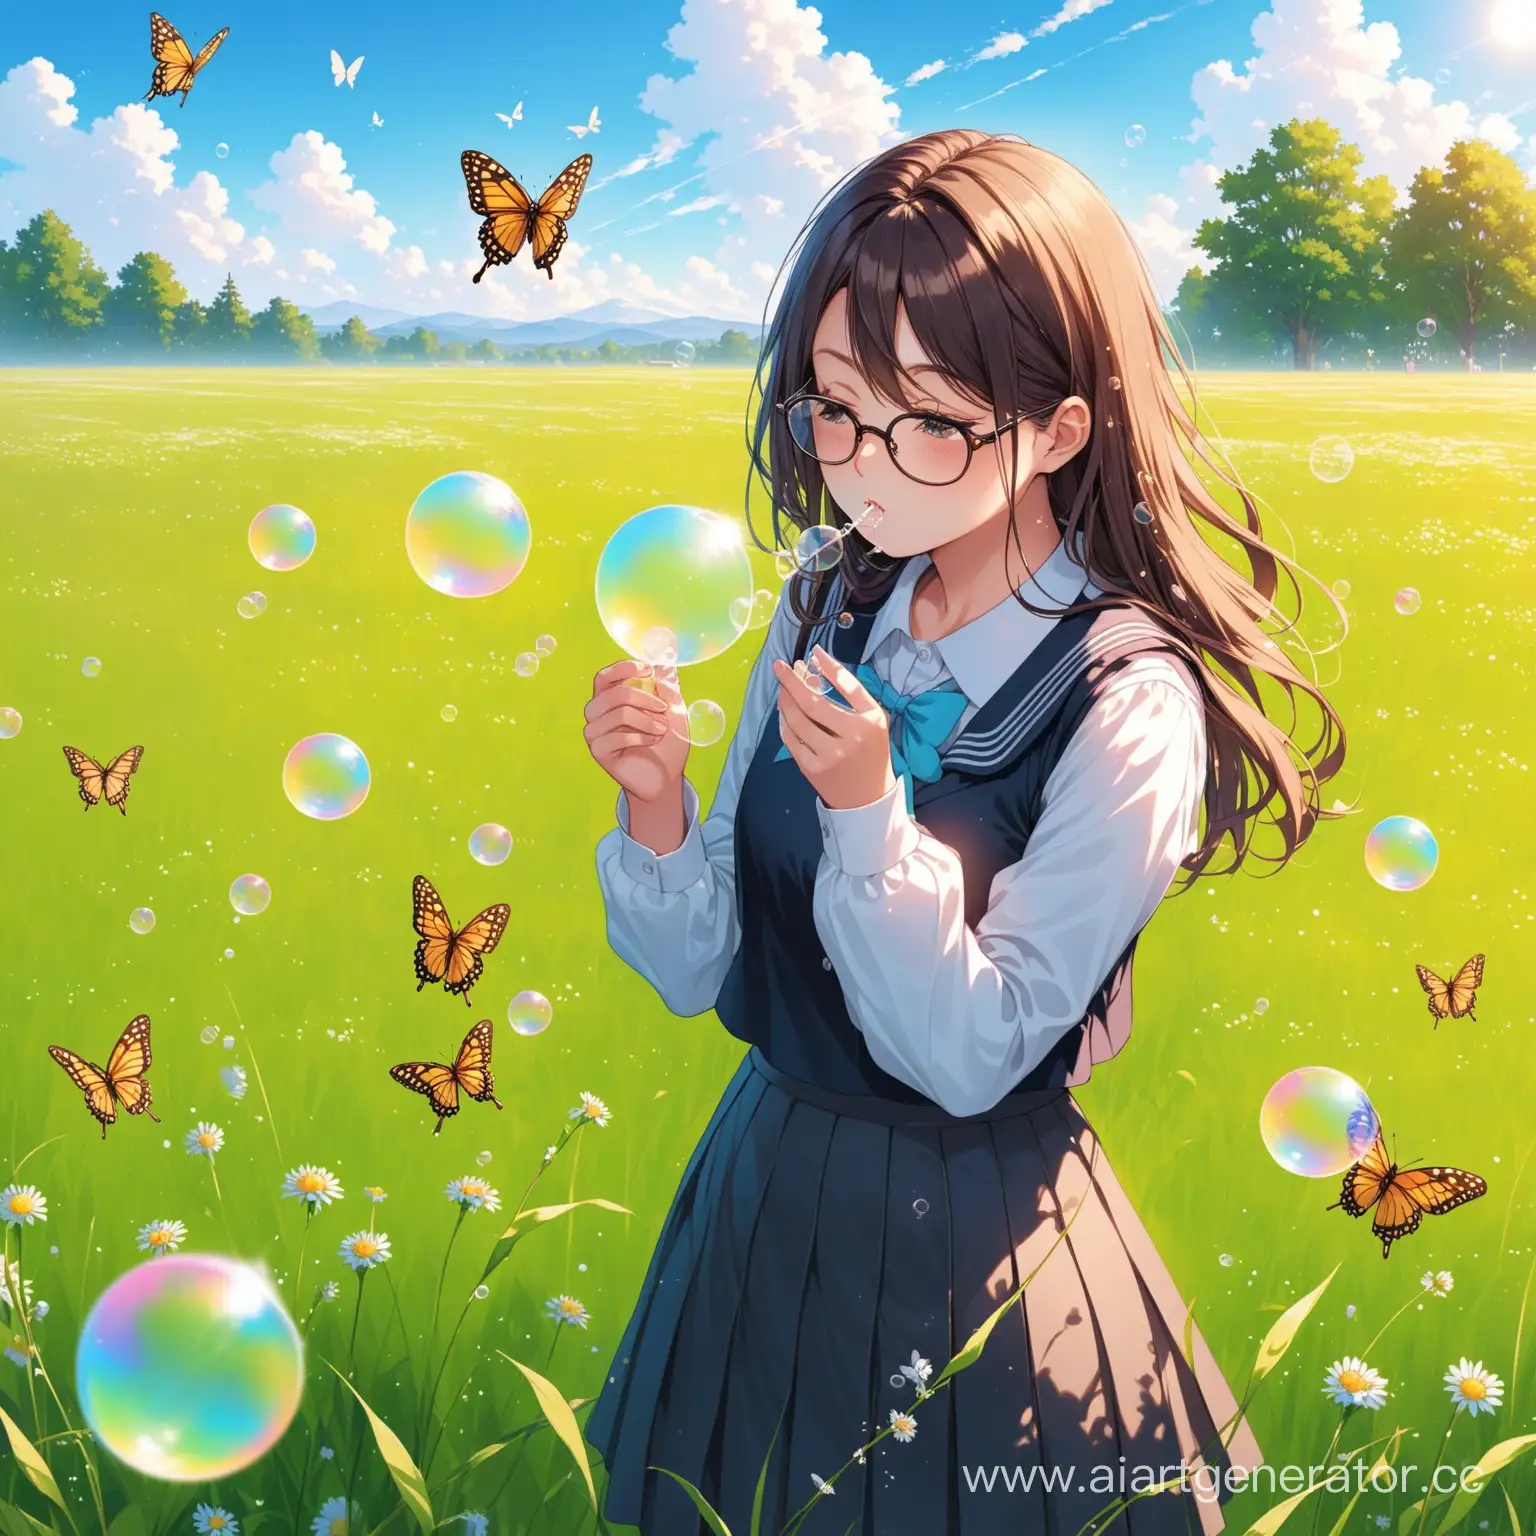 Schoolgirl-Blowing-Soap-Bubbles-in-ButterflyFilled-Meadow